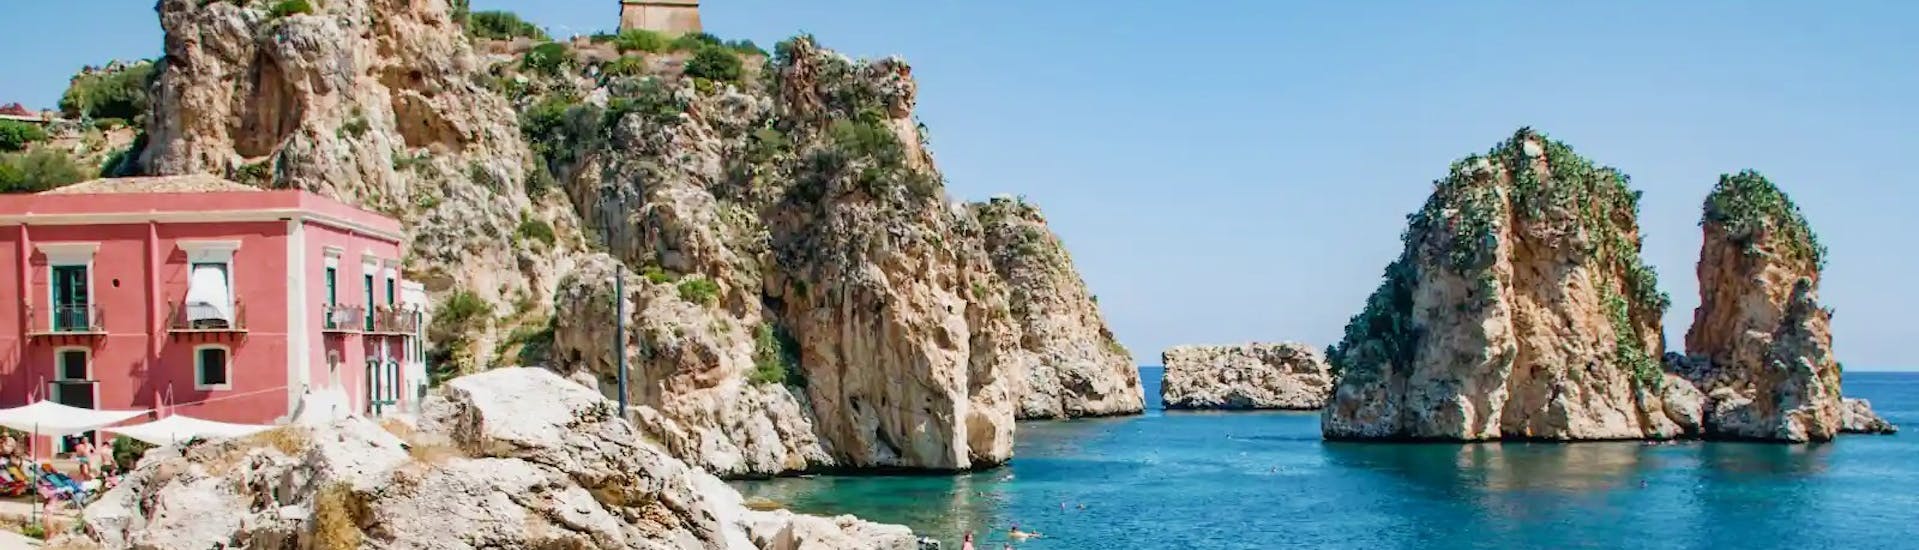 Foto van Scopello, het prachtige Siciliaanse randje dat je kunt bezoeken met een bootverhuur in San Vito Lo Capo (tot 6 personen) van Marina Yachting Sicilië San Vito Lo Capo.